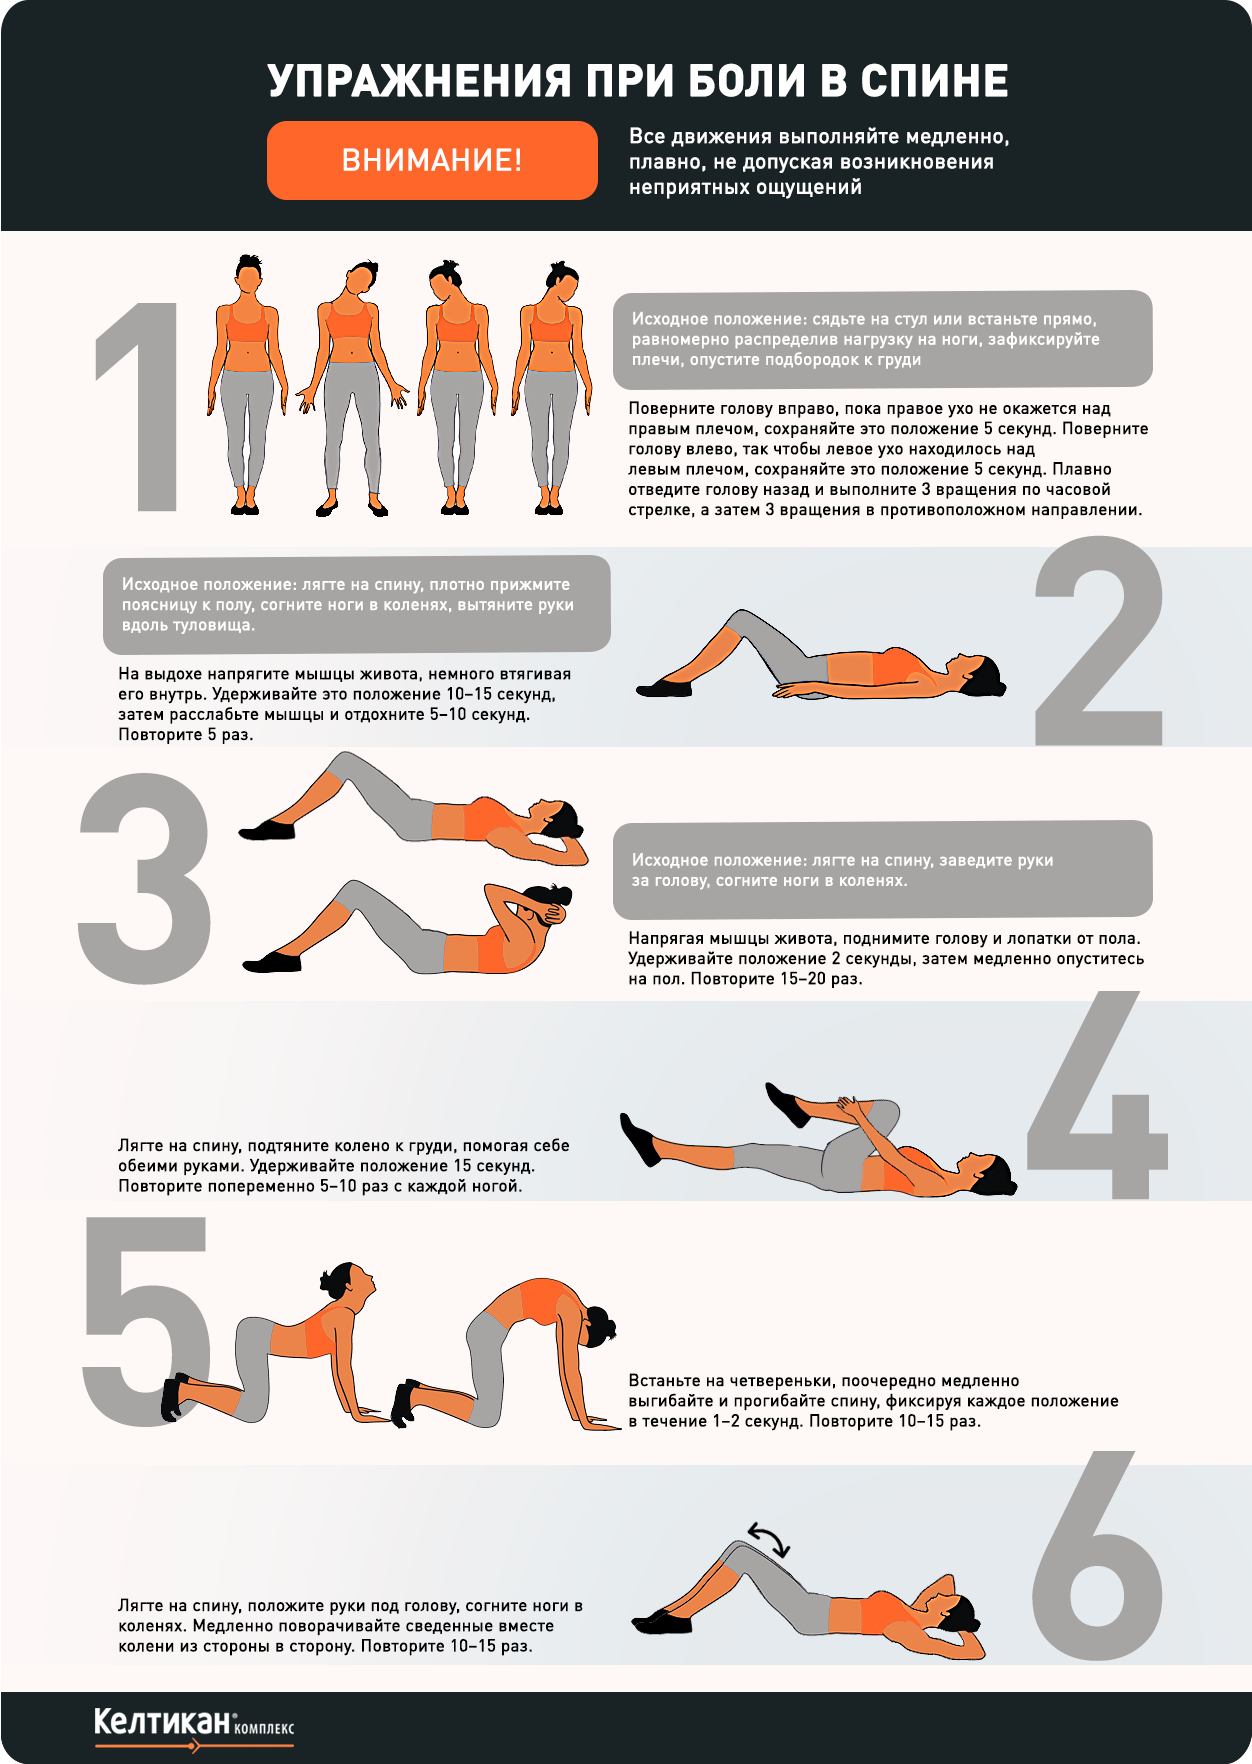 Упражнения при остеохондрозе поясничного отдела позвоночника: гимнастика для спины, комплекс, физкультура